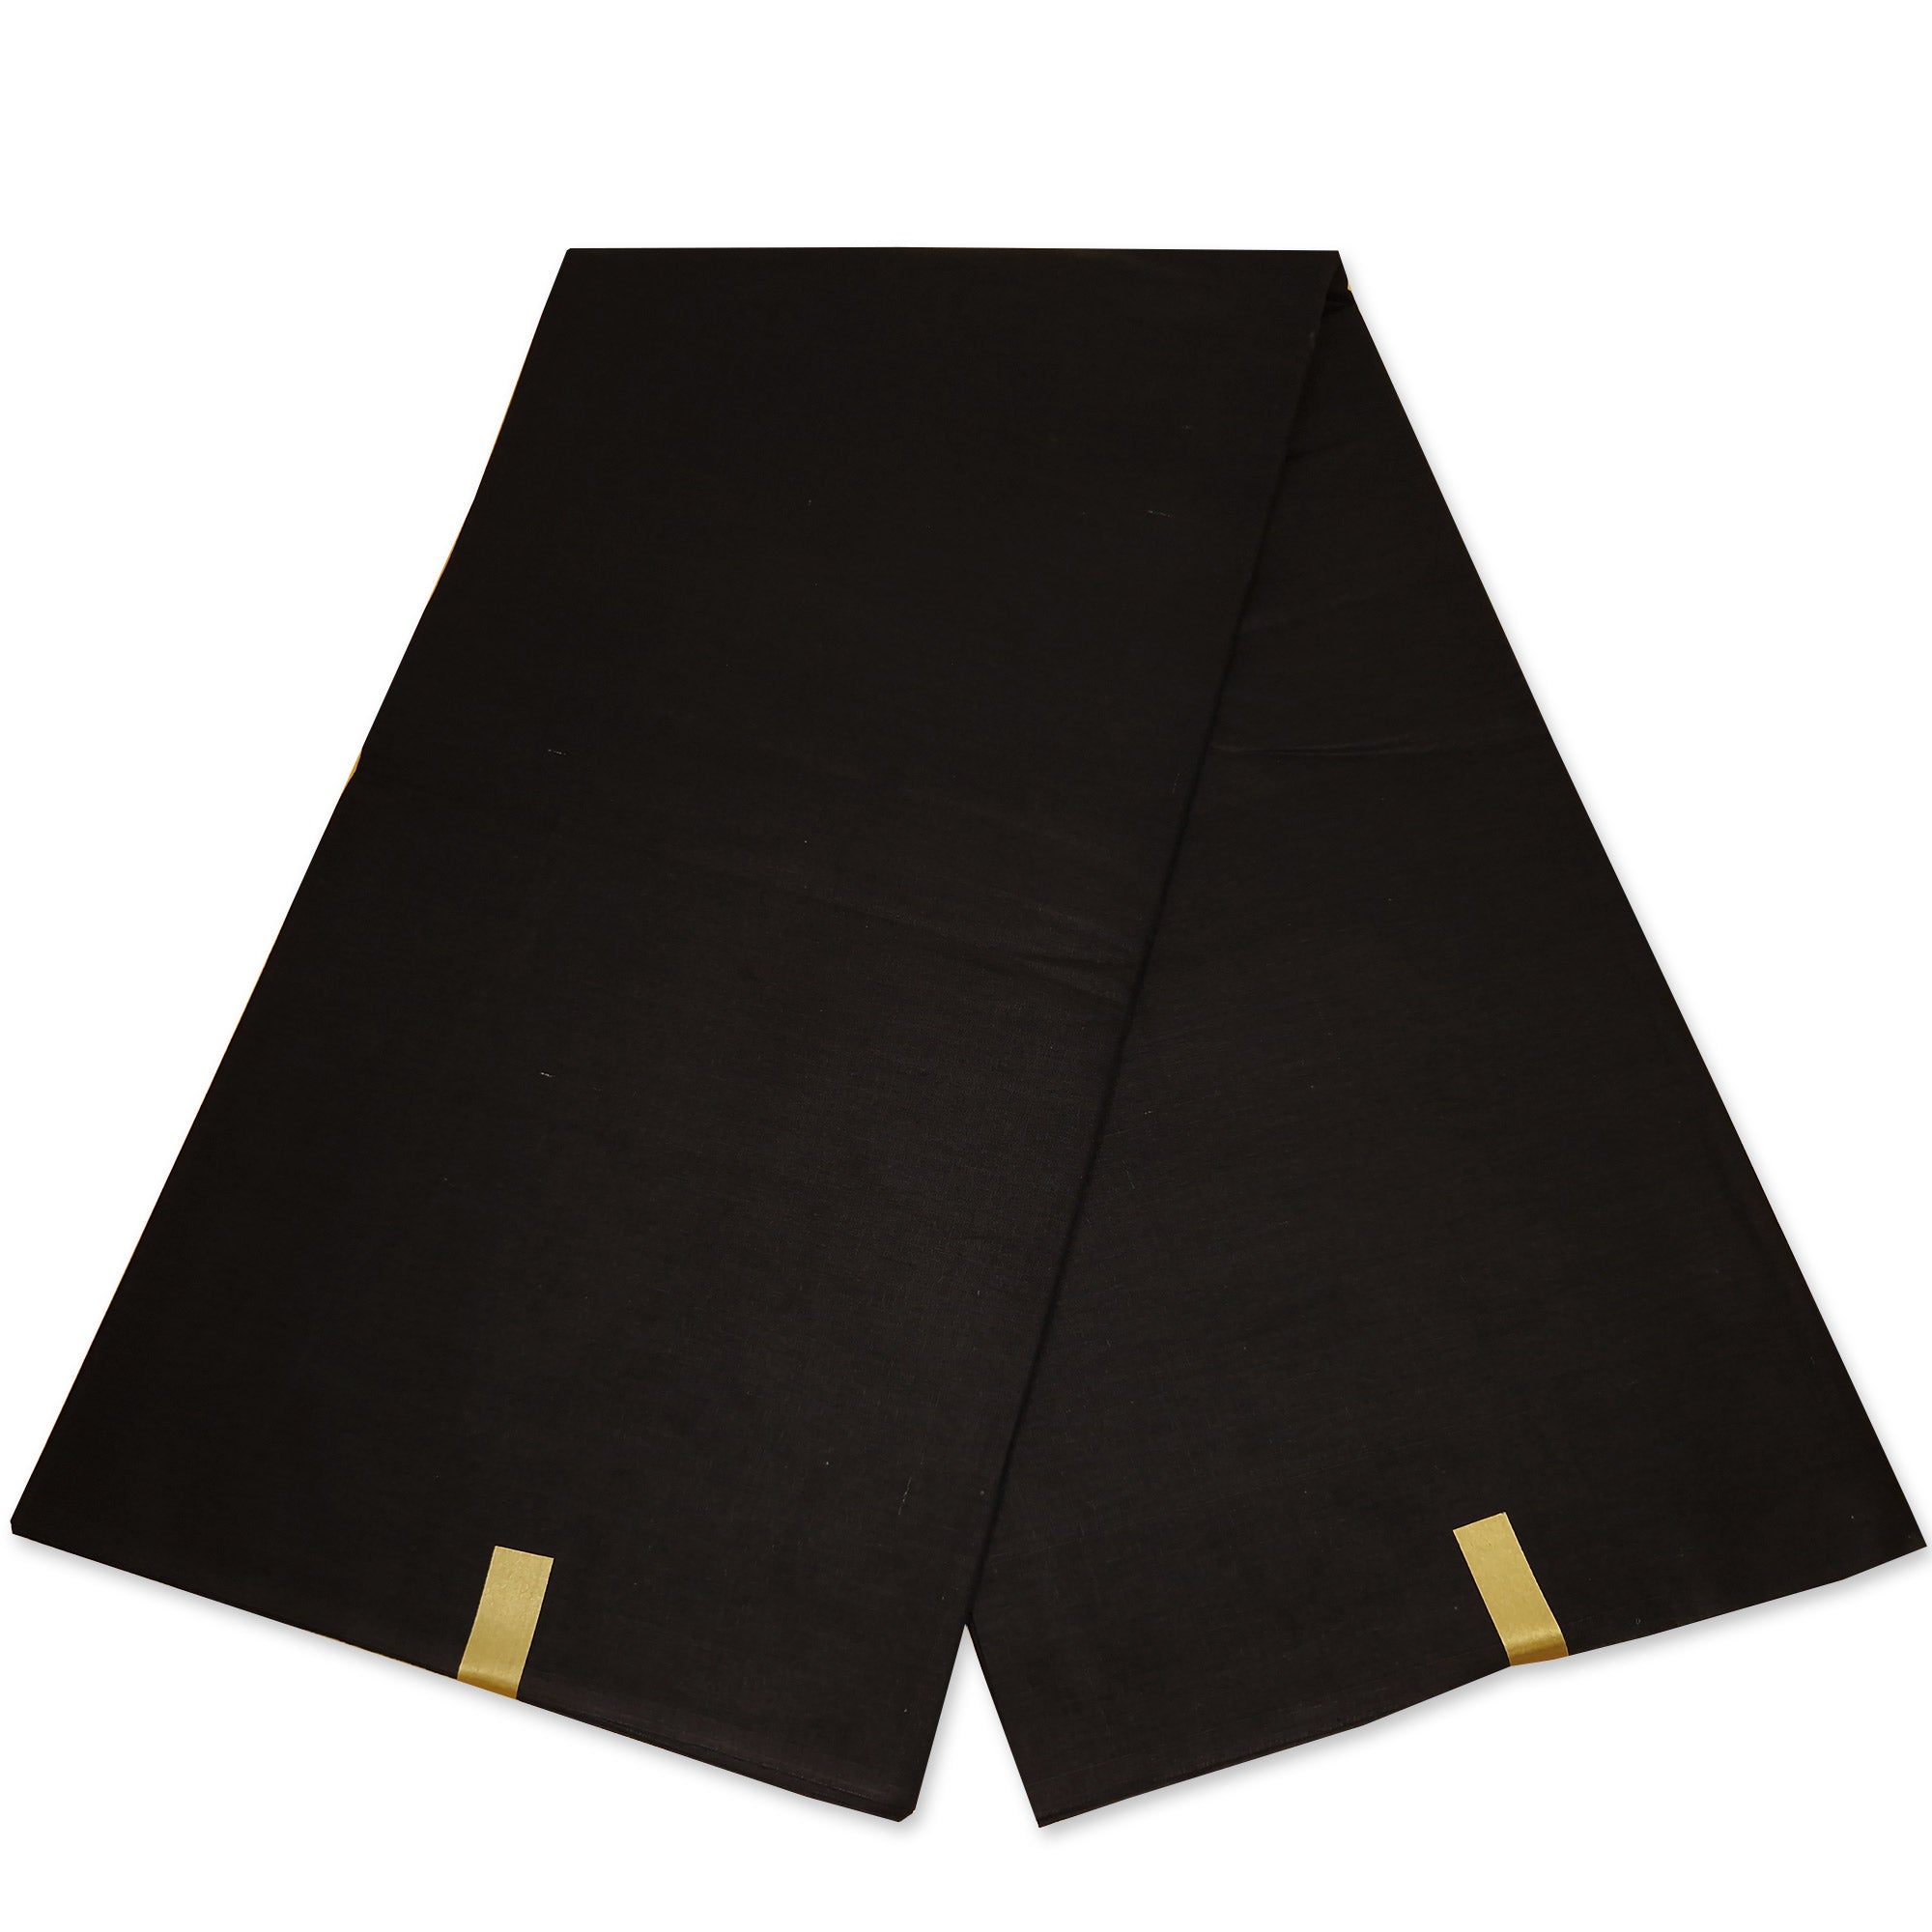 Tissu uni noir - Couleur unie noire - 100% coton